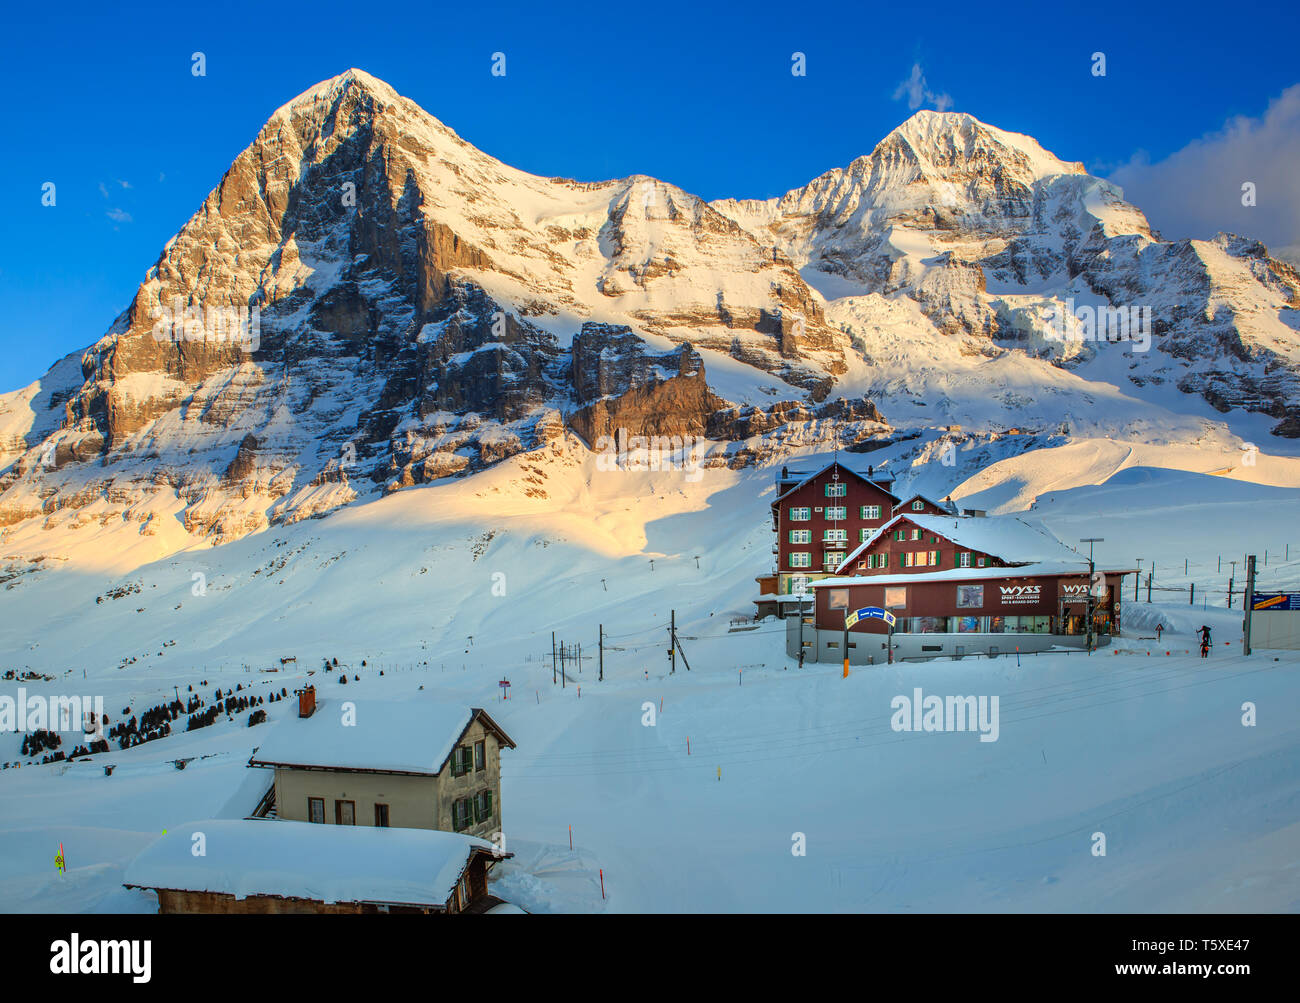 Chalets et hôtel avec face nord de l'Eiger et le Mönch montagnes derrière, en hiver. Kleine Scheidegg, Oberland Bernois, Suisse (Suisse) Banque D'Images